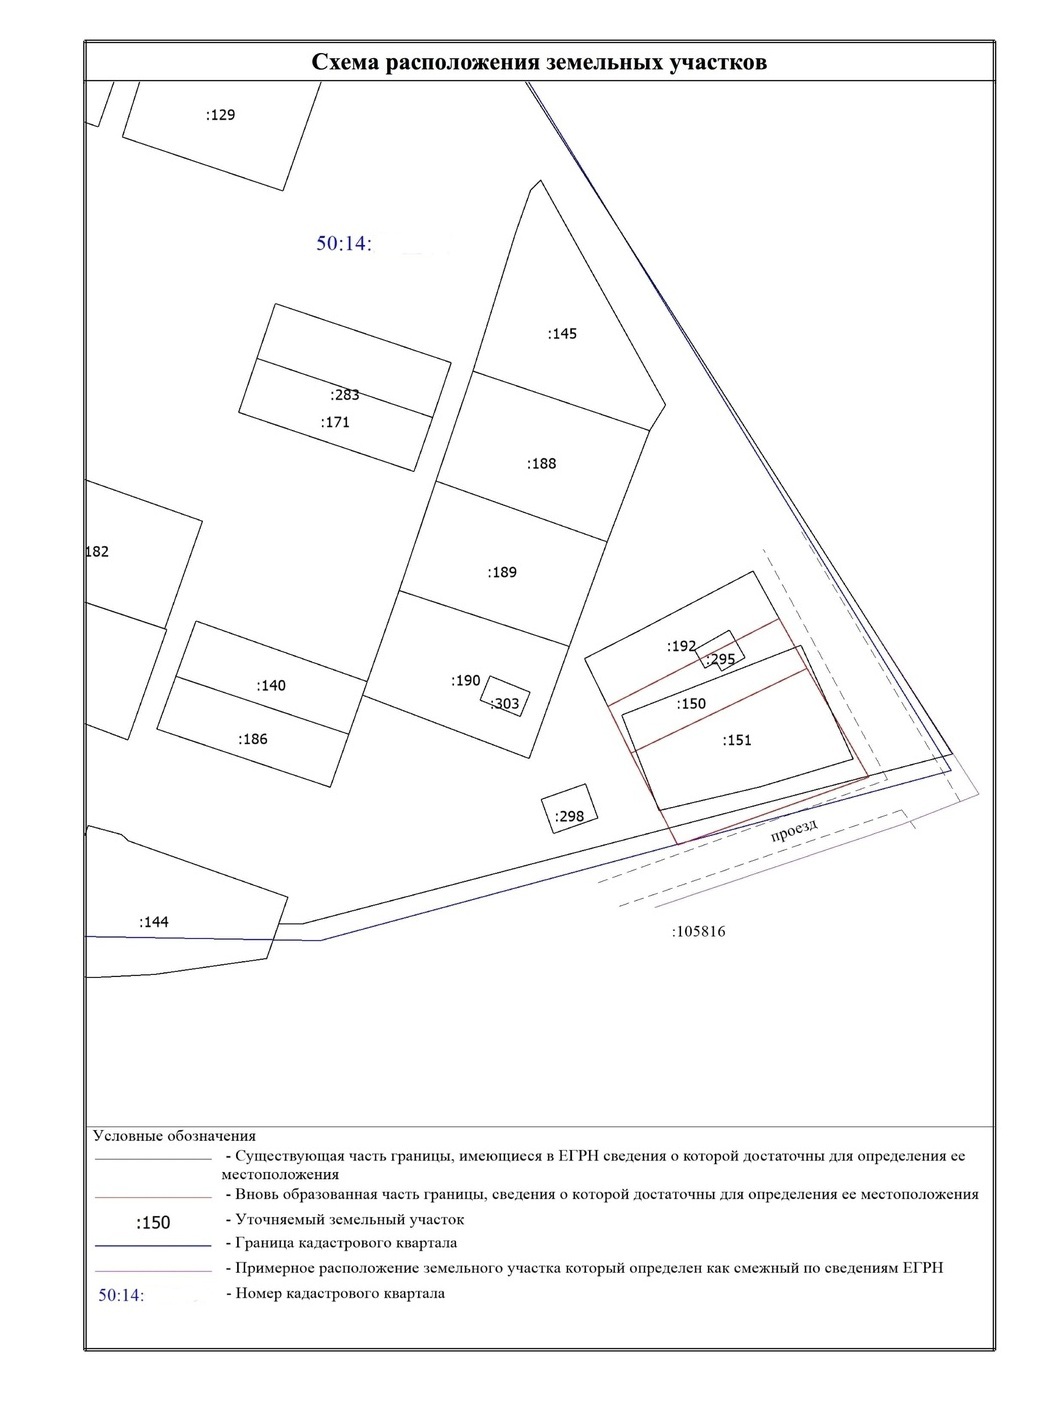 Схема расположения земельного участка-Кадастр 50